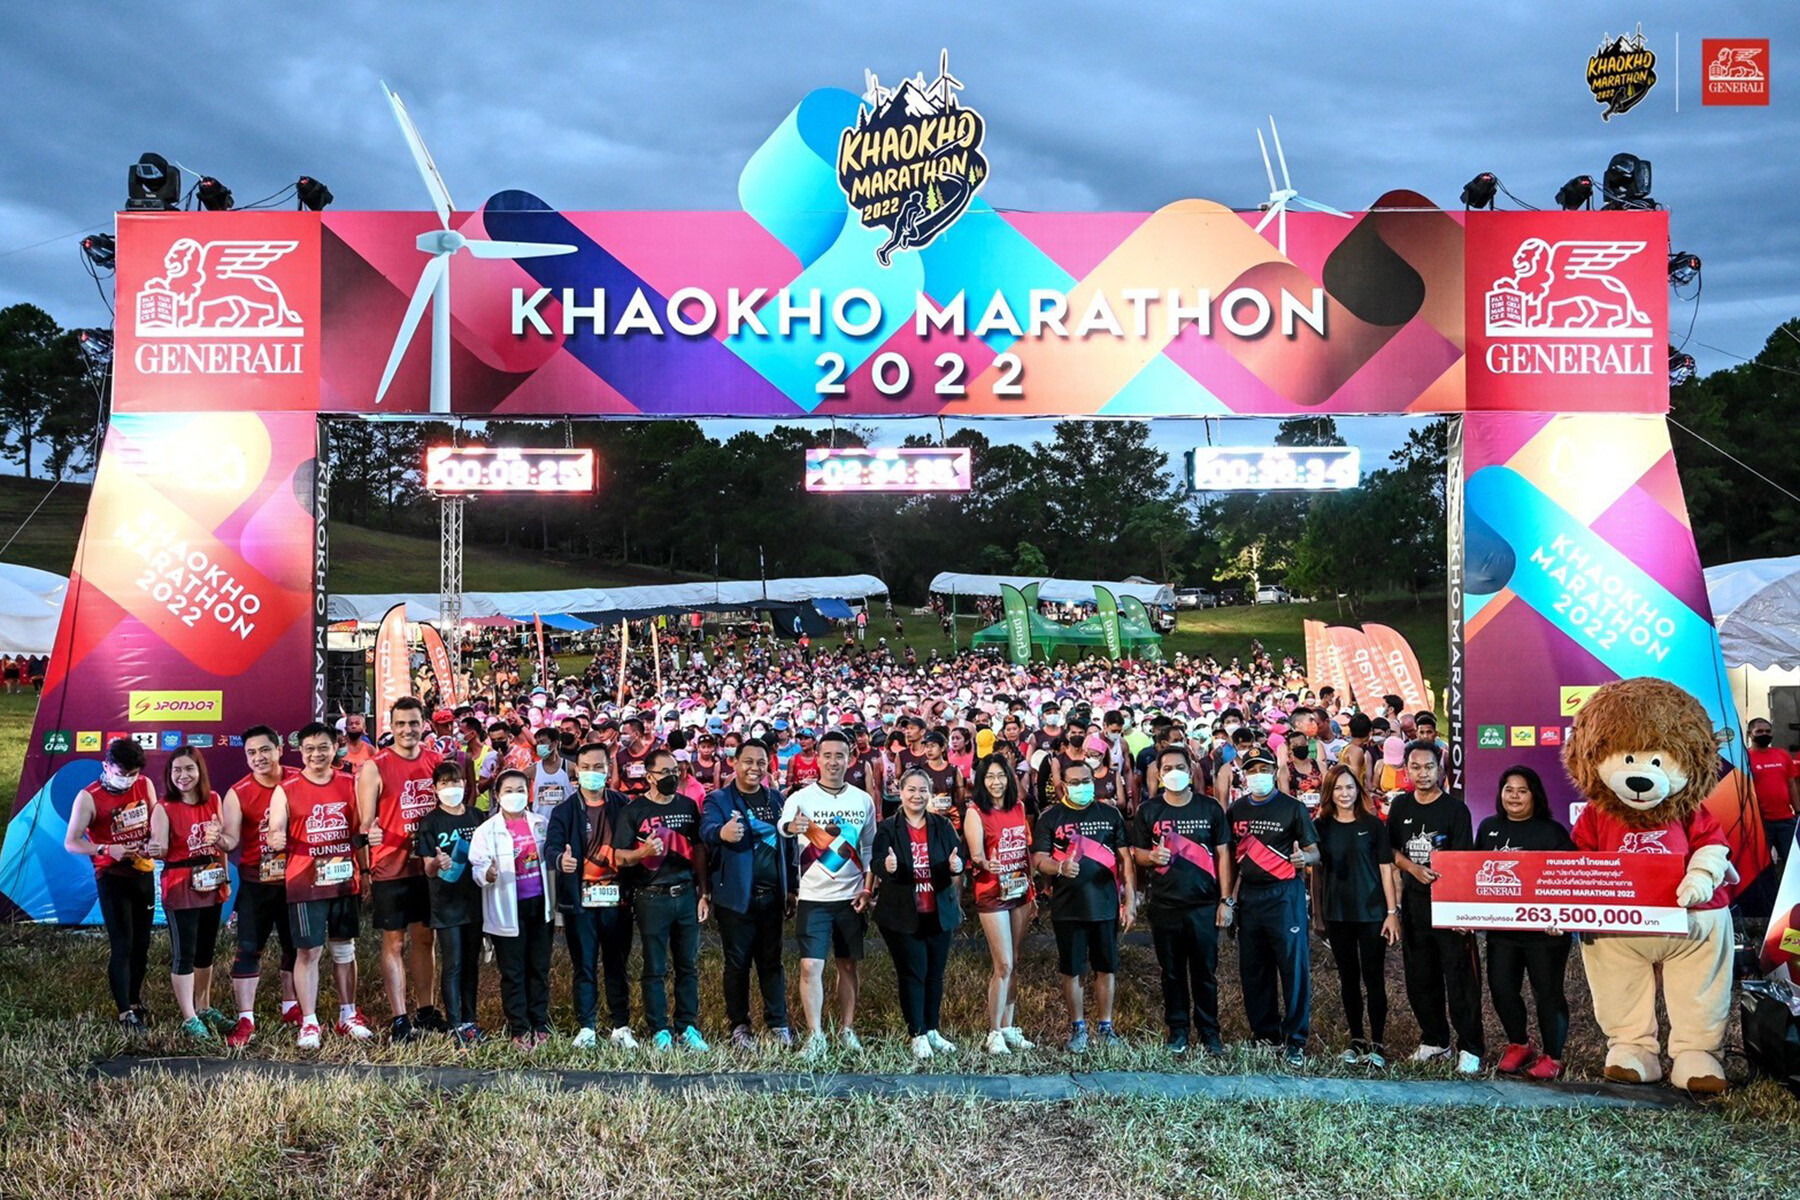 เจนเนอราลี่ เอาใจสายคนรักสุขภาพ สนับสนุนงาน "Khaokho Marathon 2022" ต่อเนื่องเป็นปีที่ 3